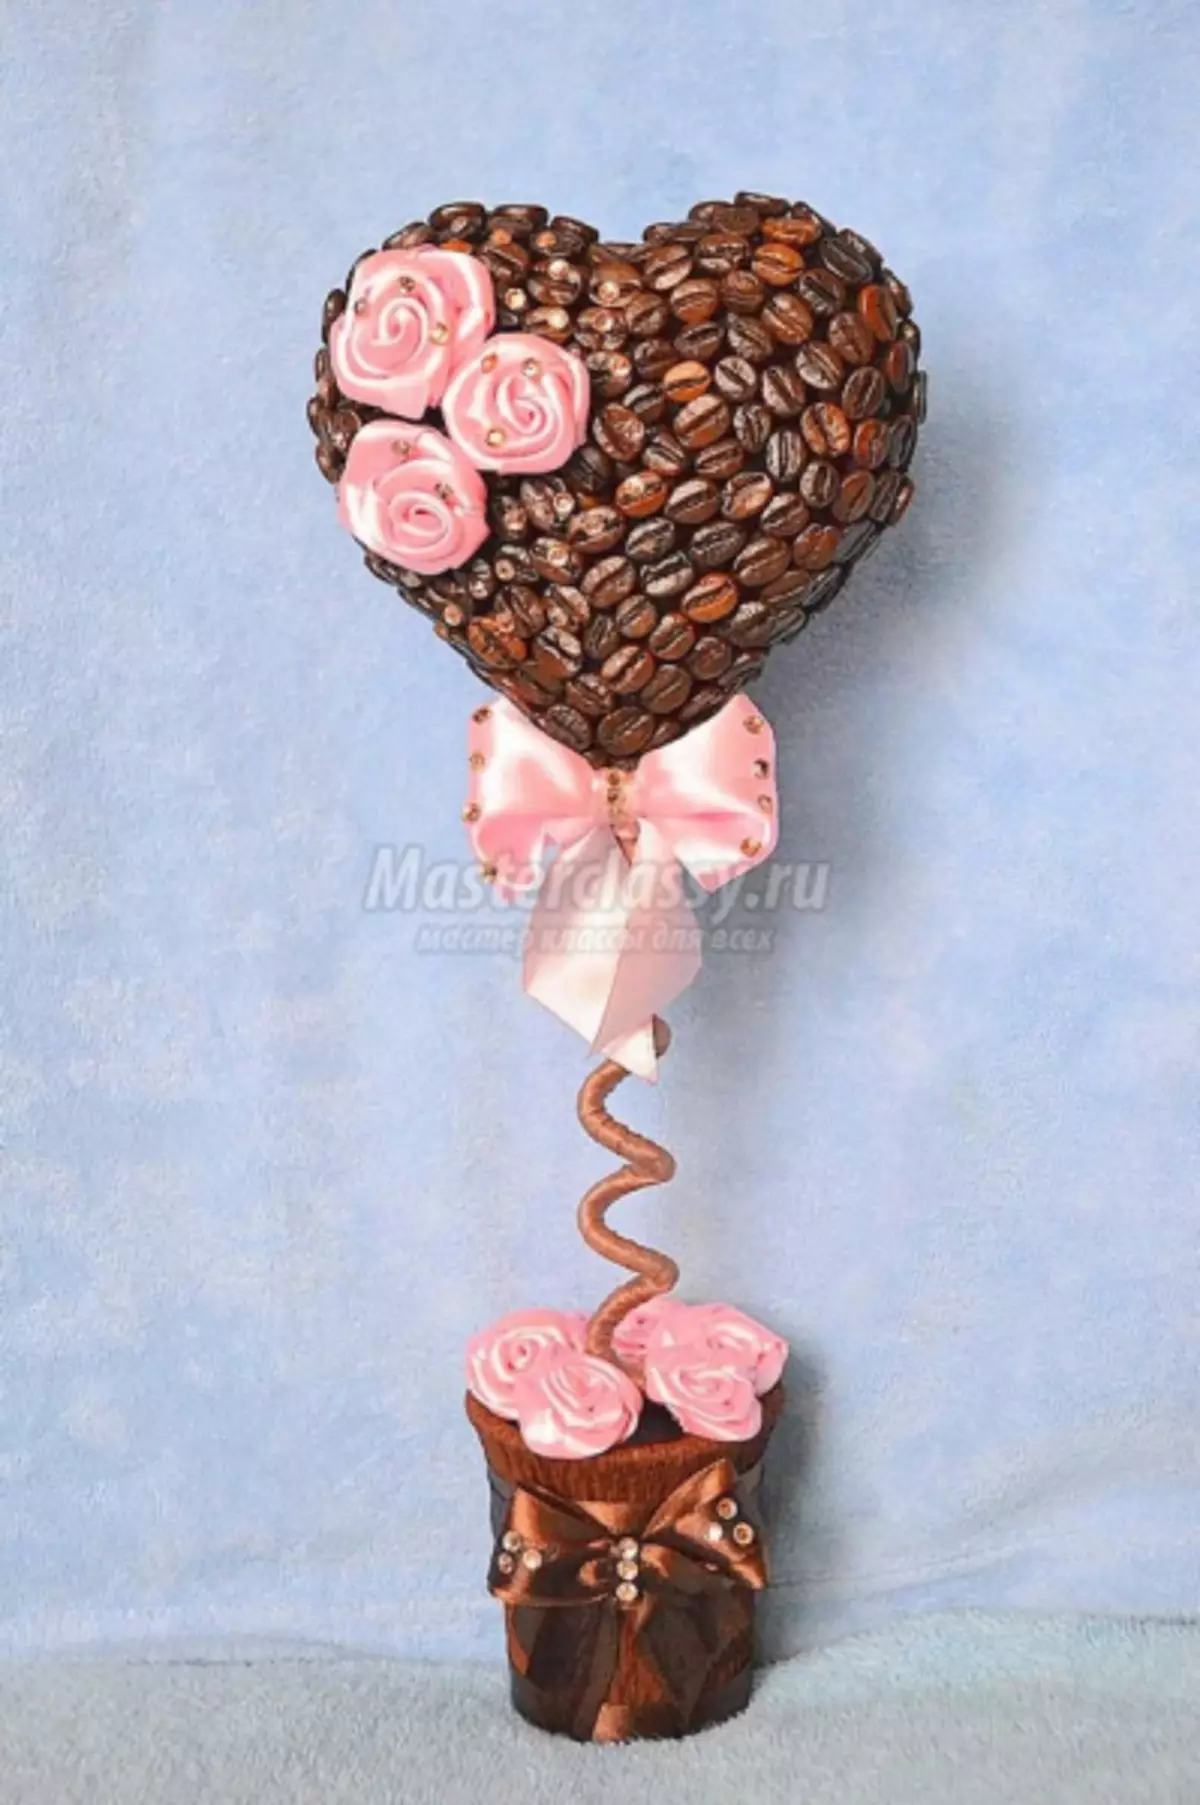 topicia กาแฟและดอกไม้ในรูปแบบของหัวใจที่มีรูปถ่ายและวิดีโอ